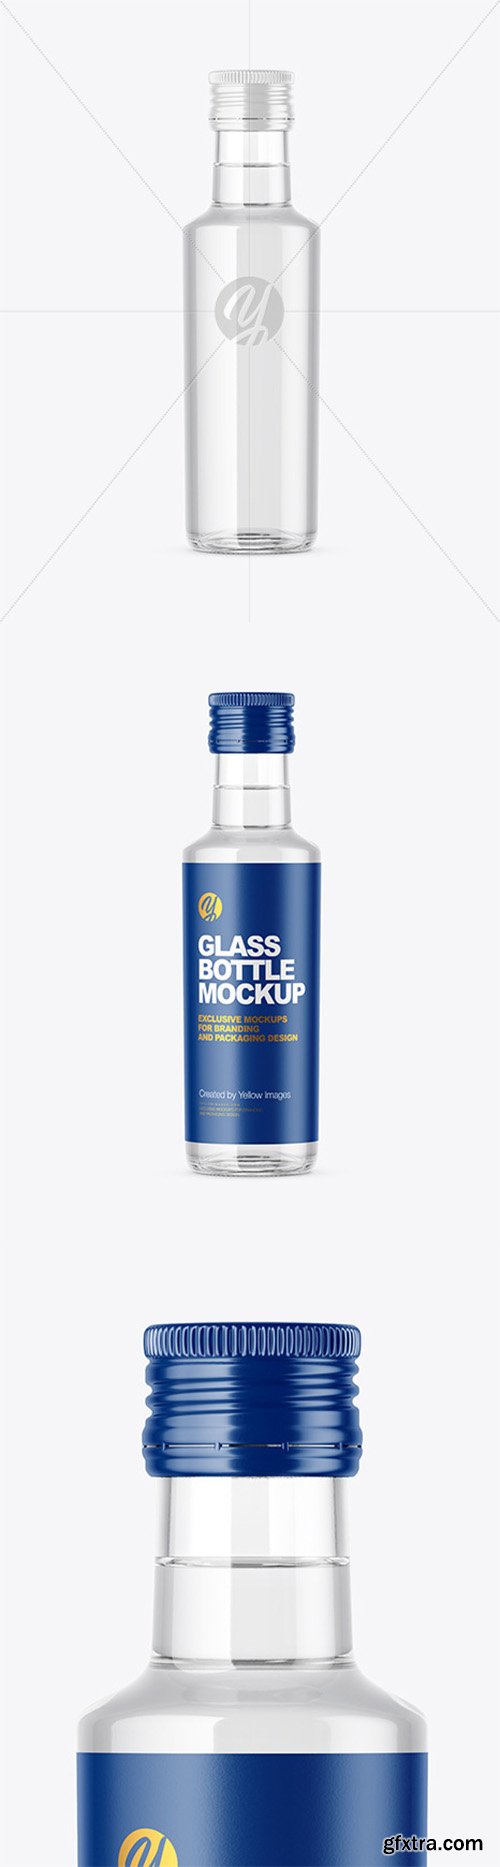 Clear Glass Bottle Mockup 44601